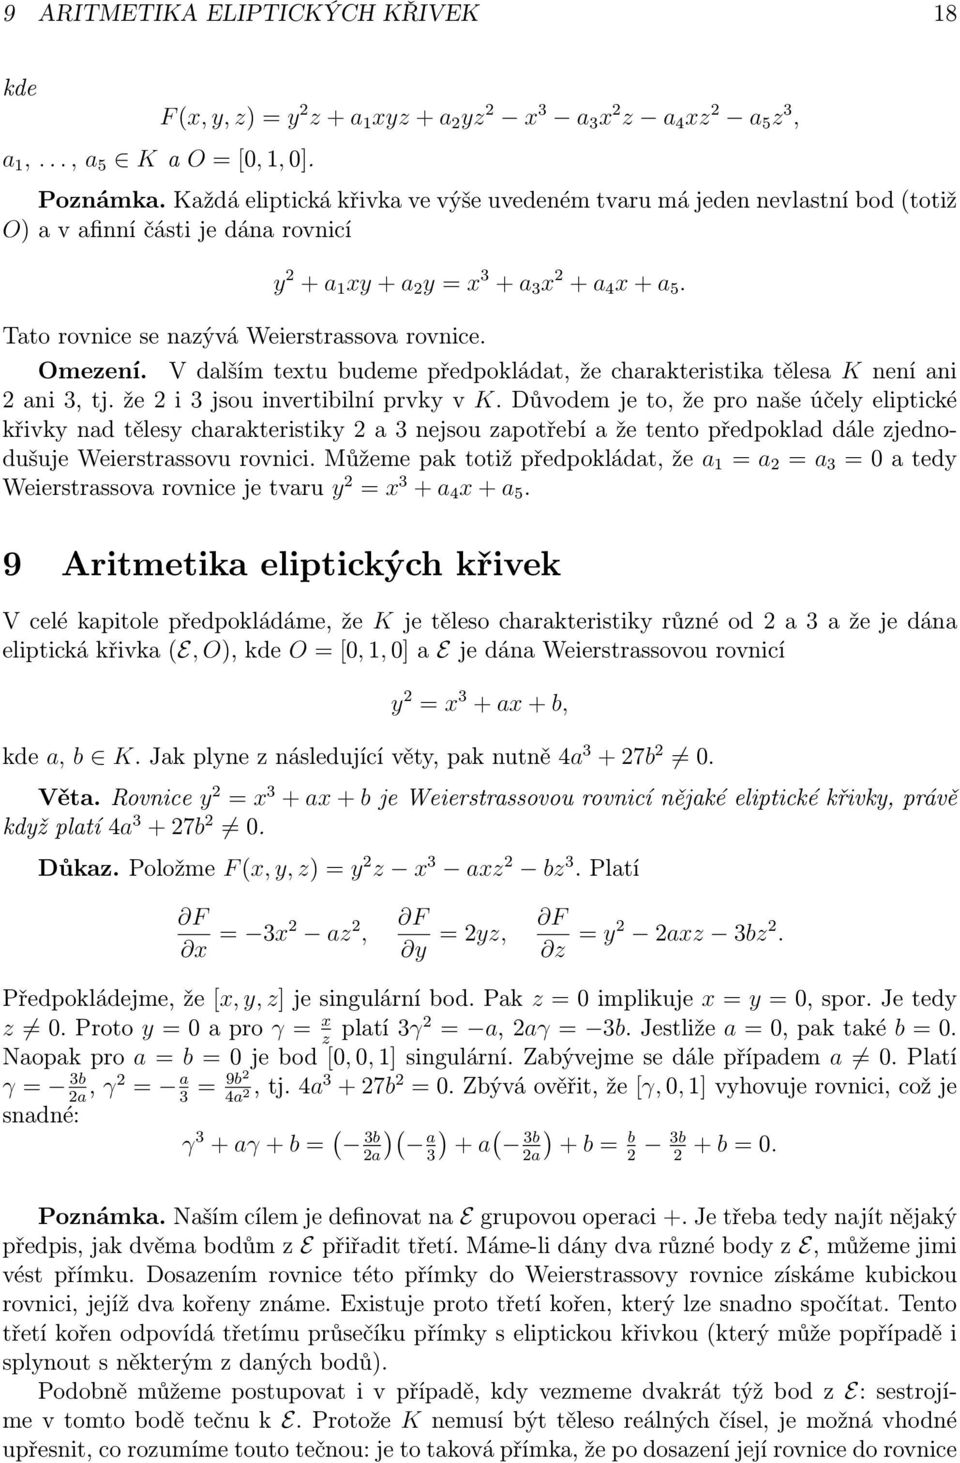 Tato rovnice se nazývá Weierstrassova rovnice. Omezení. V dalším textu budeme předpokládat, že charakteristika tělesa K není ani 2 ani 3, tj. že 2 i 3 jsou invertibilní prvky v K.